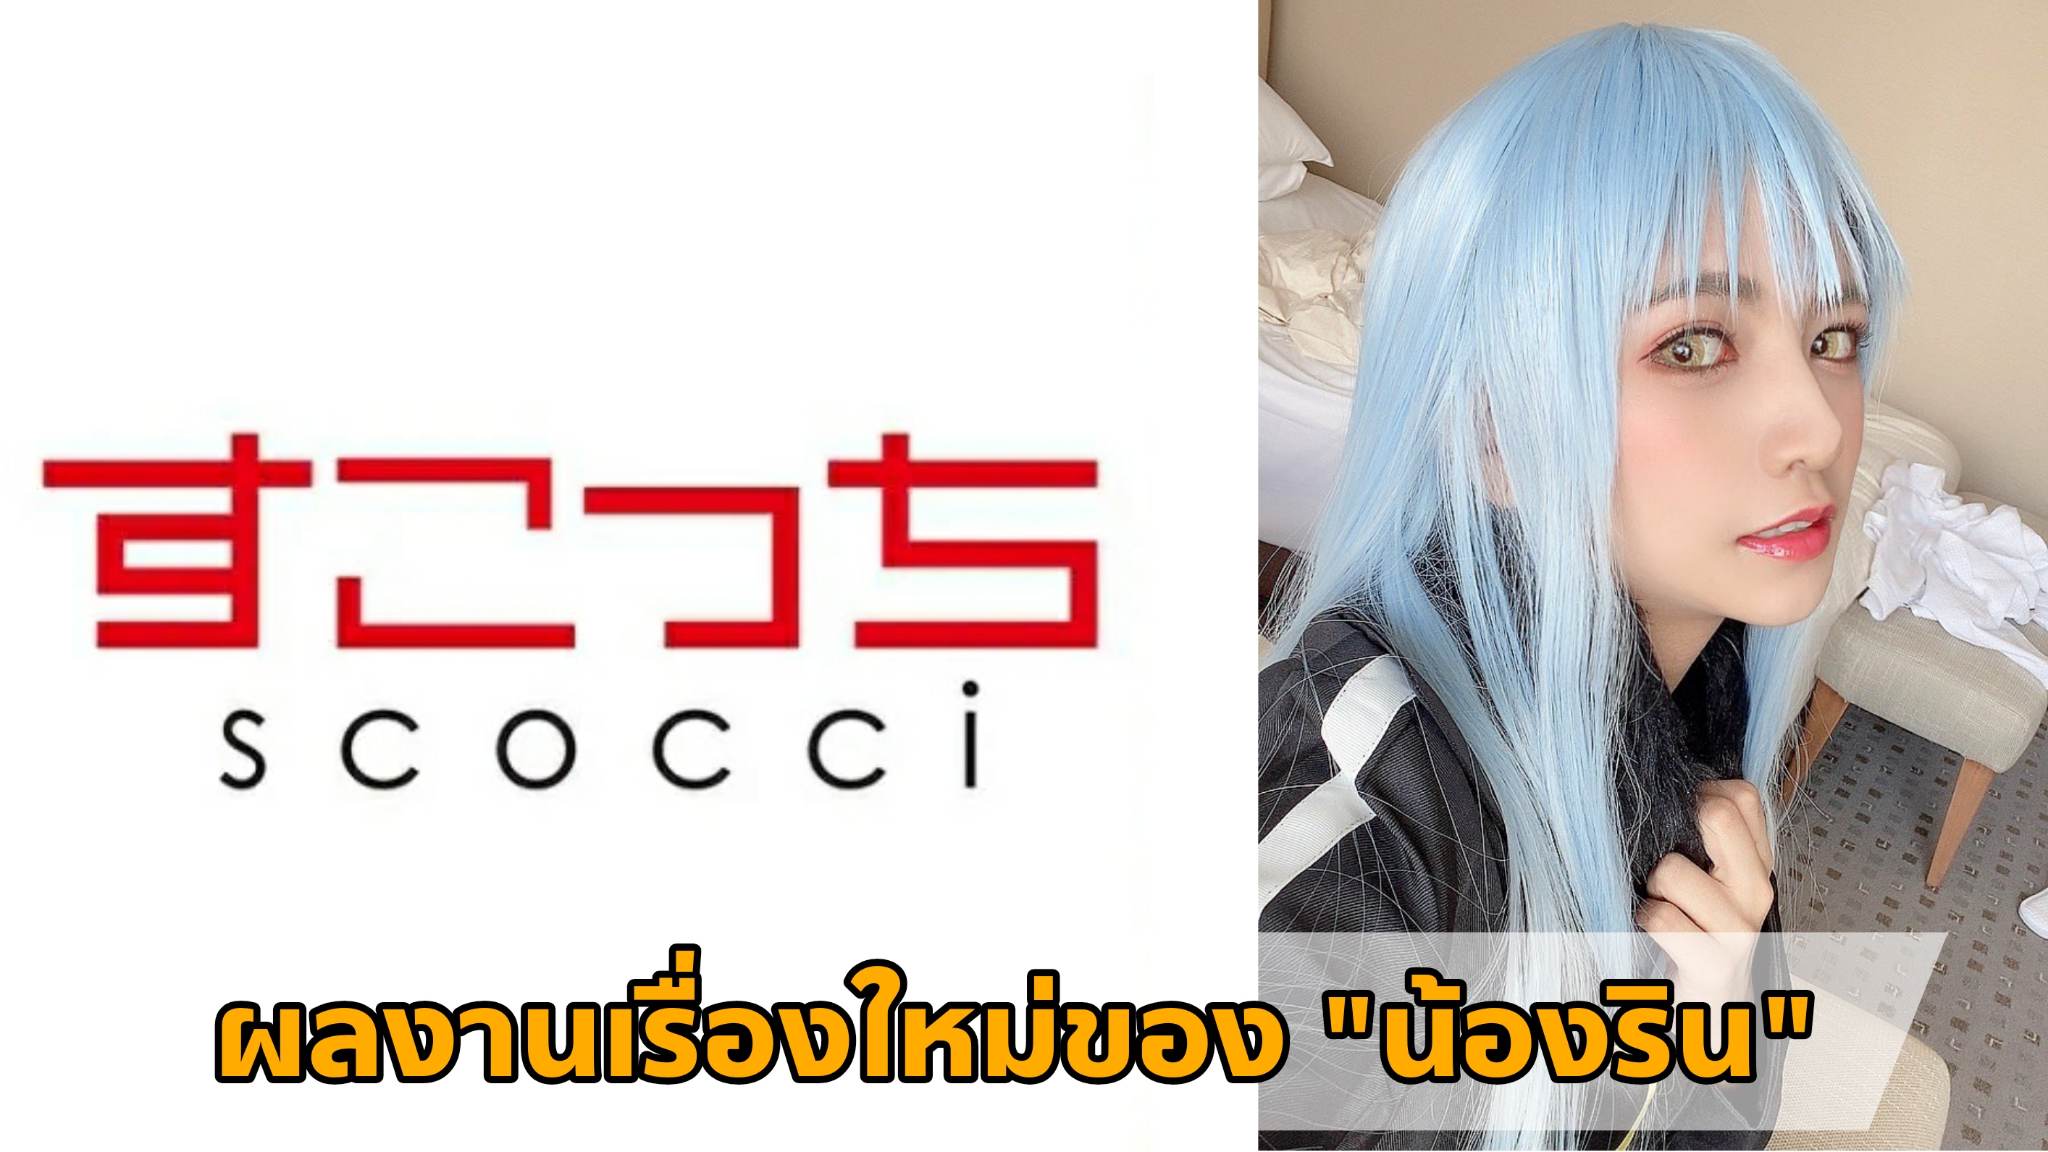 [SCOH-105] ผลงานเรื่องใหม่ของ "น้องริน" (Rin Miyazaki) Cosplay เป็น "ท่านริมุรุ" 5